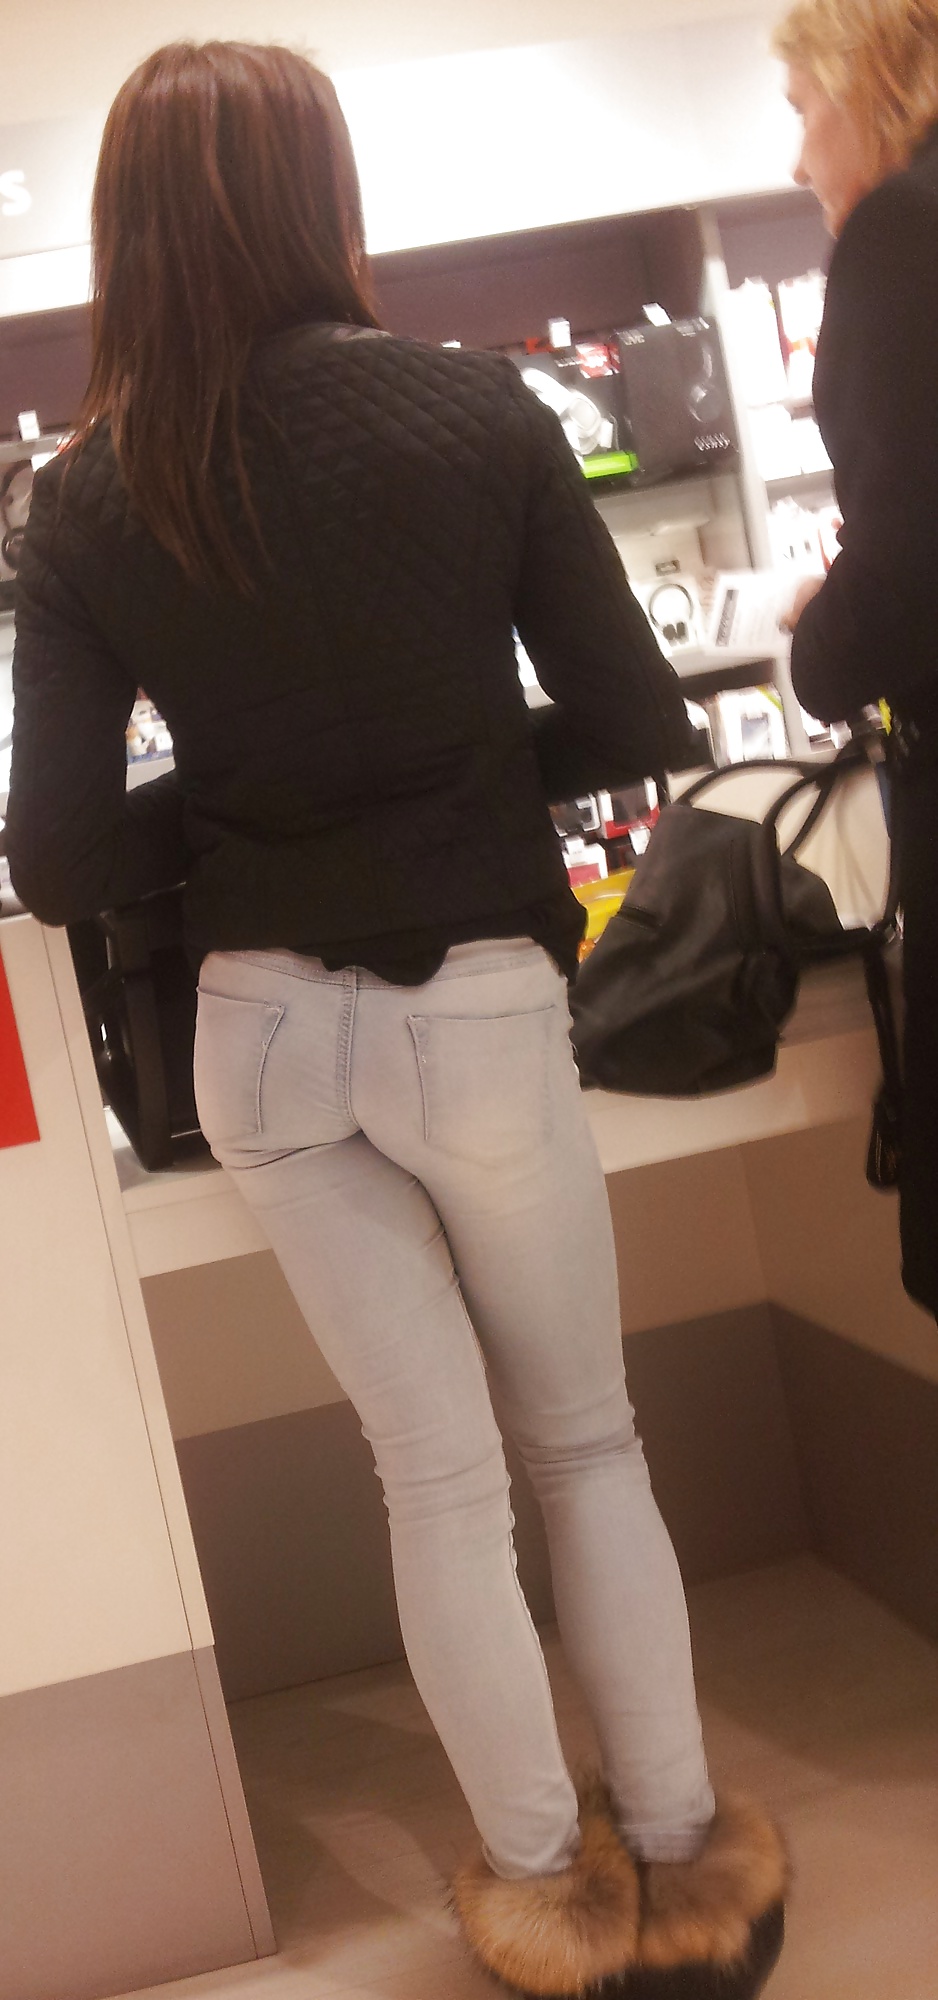 Joli ptit cul dans les magasins - Tight ass in jeans #34031262